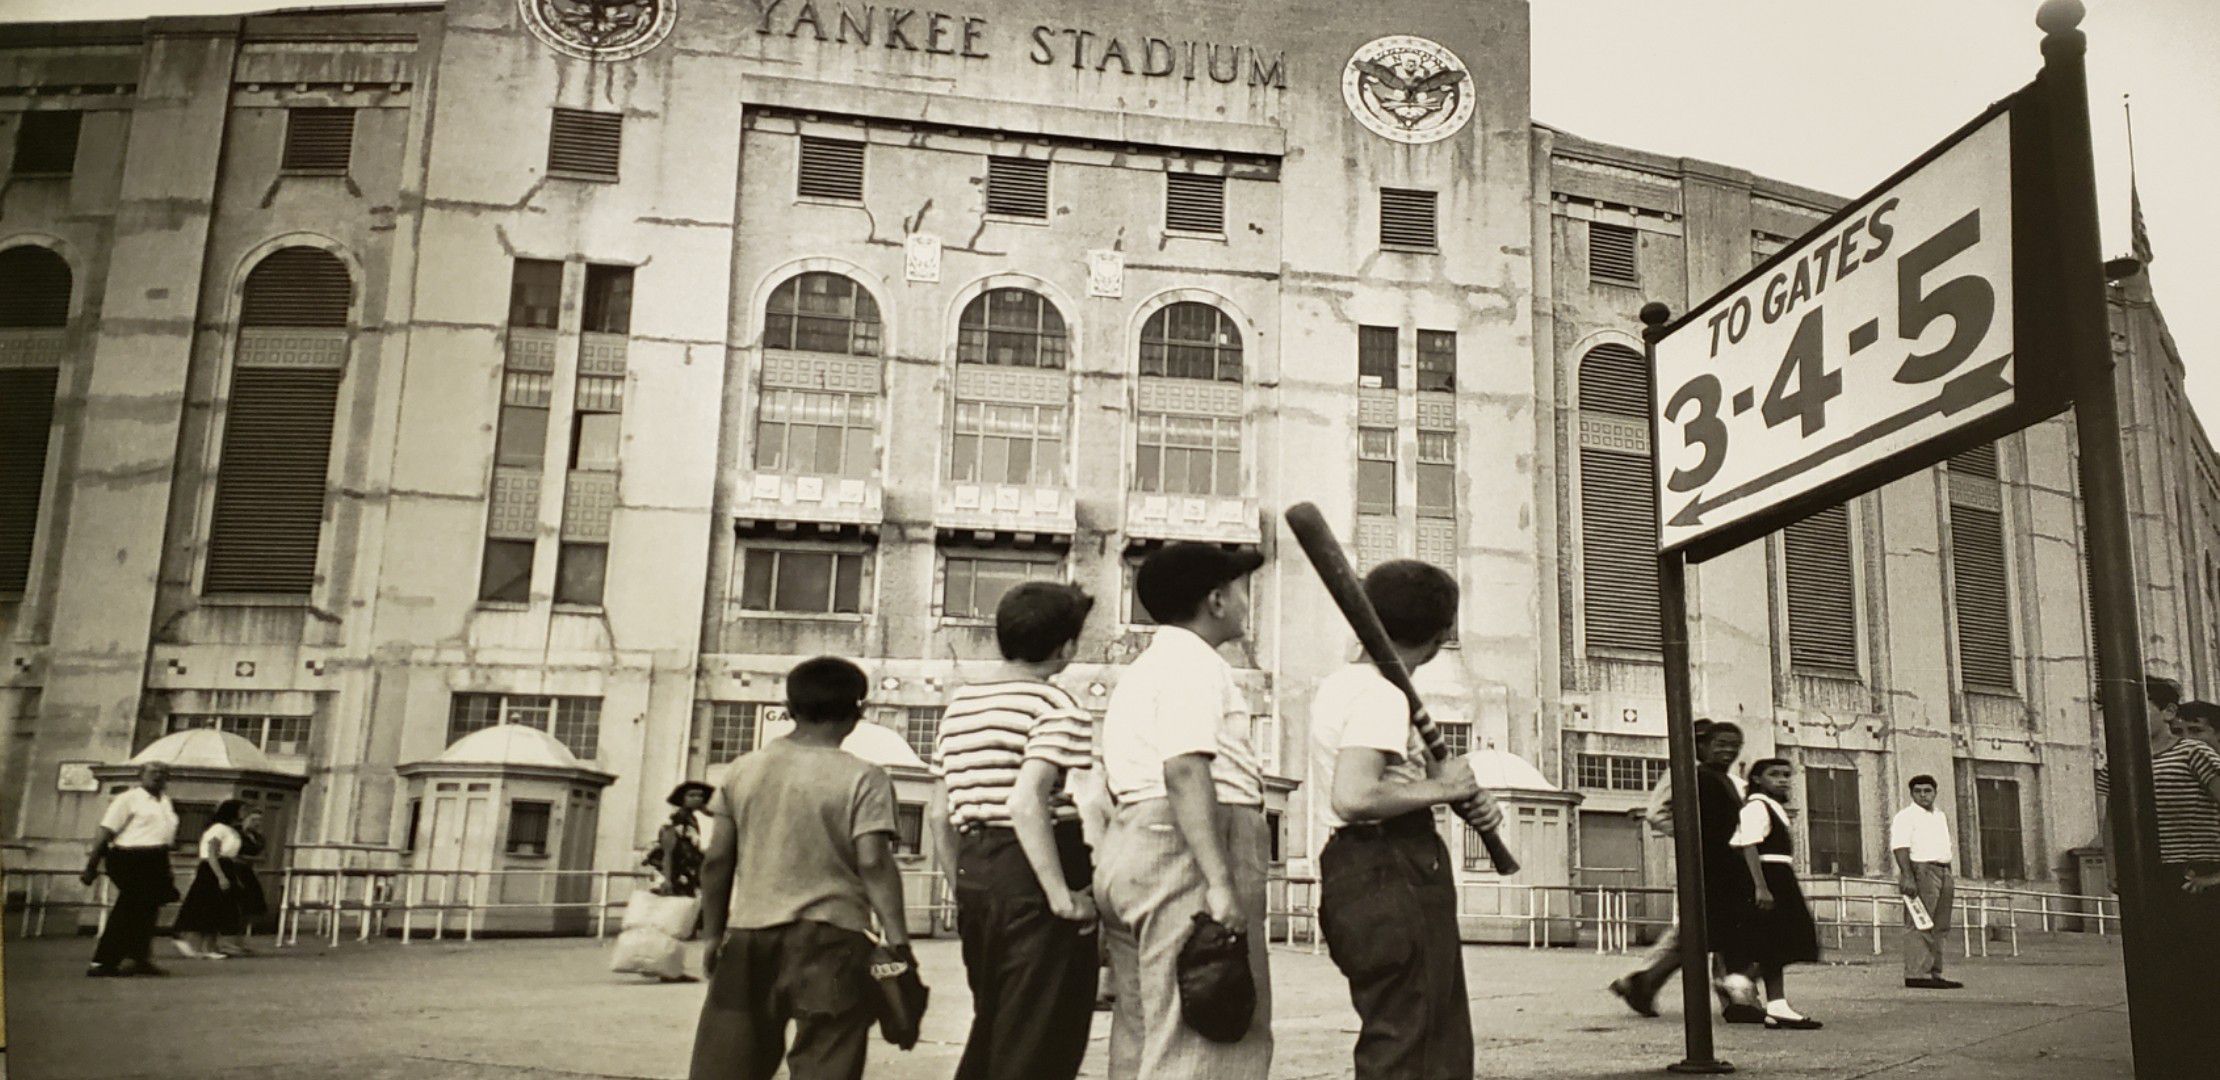 Yankee stadium picture